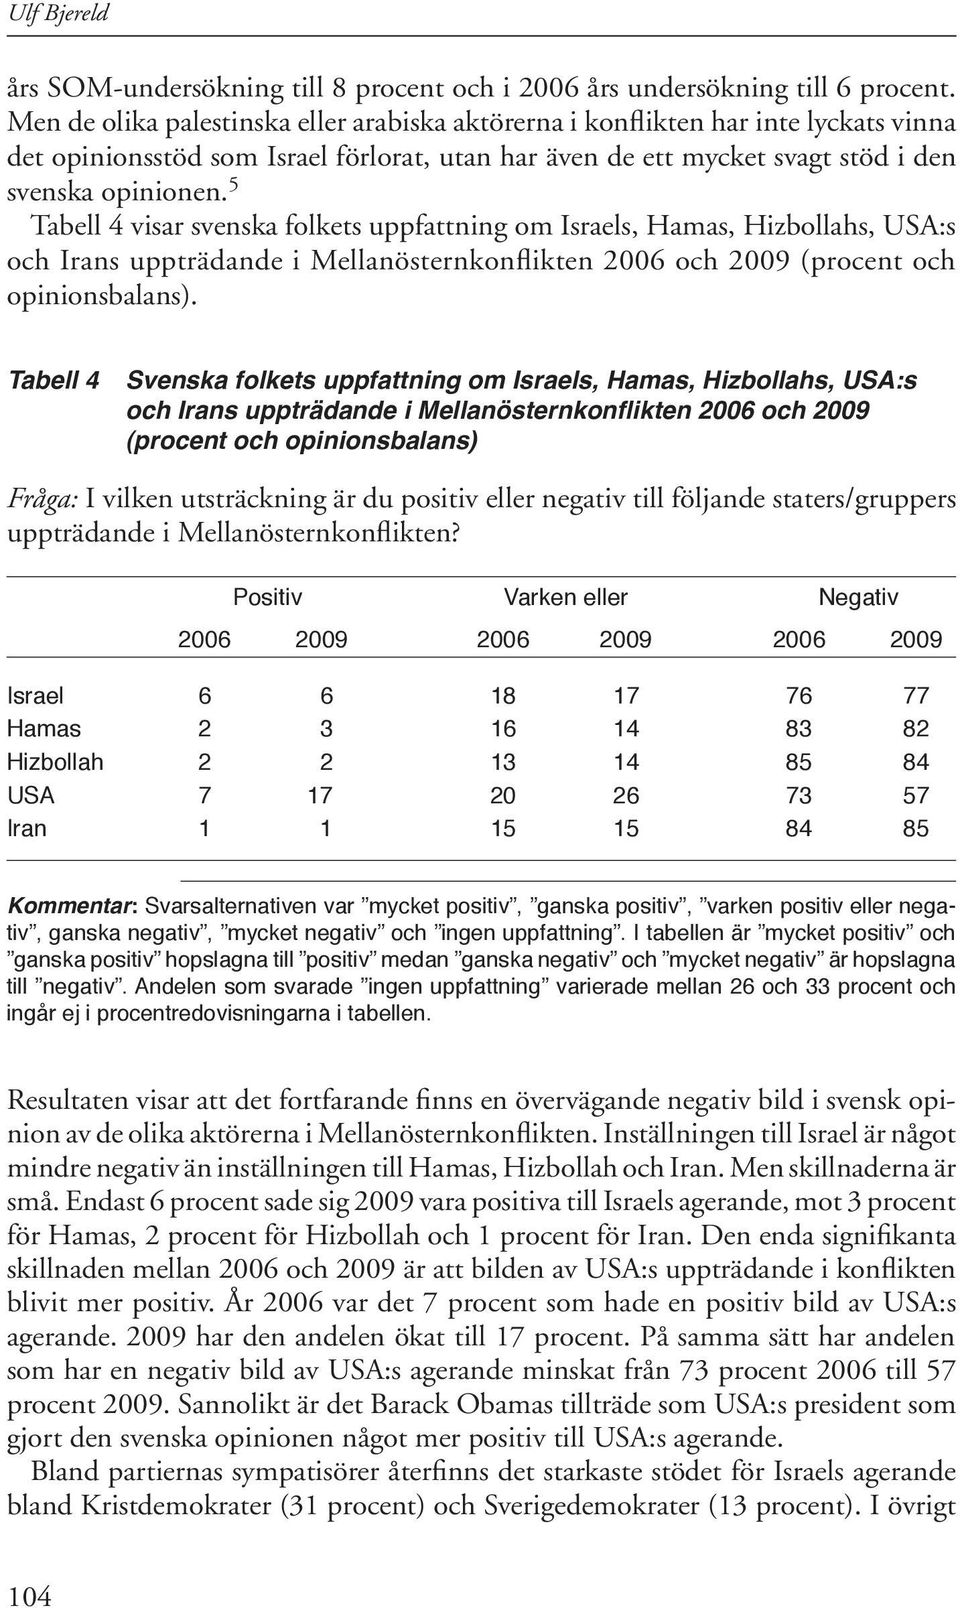 5 Tabell 4 visar svenska folkets uppfattning om Israels, Hamas, Hizbollahs, USA:s och Irans uppträdande i Mellanösternkonflikten 2006 och 2009 (procent och opinionsbalans).